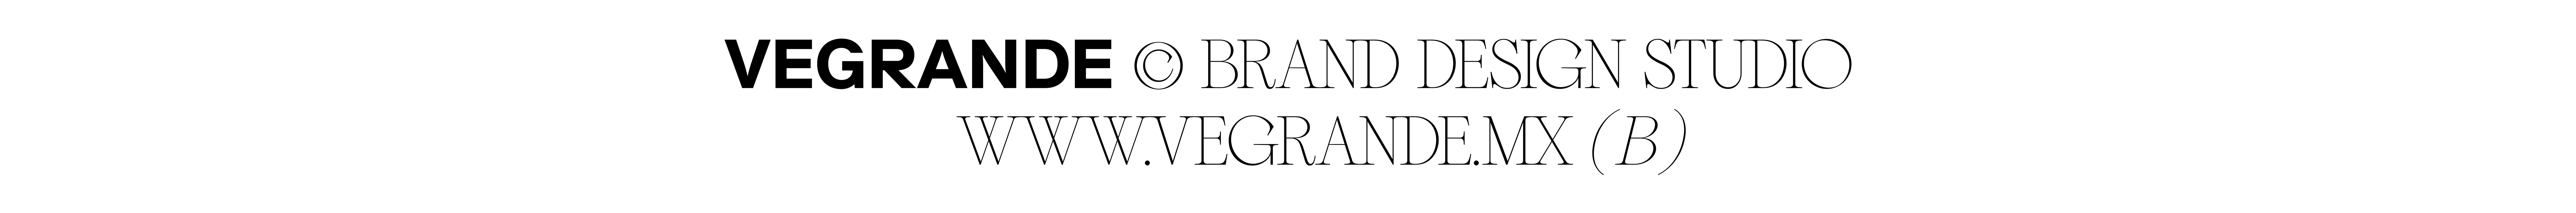 Banner de perfil de VEGRANDE ®